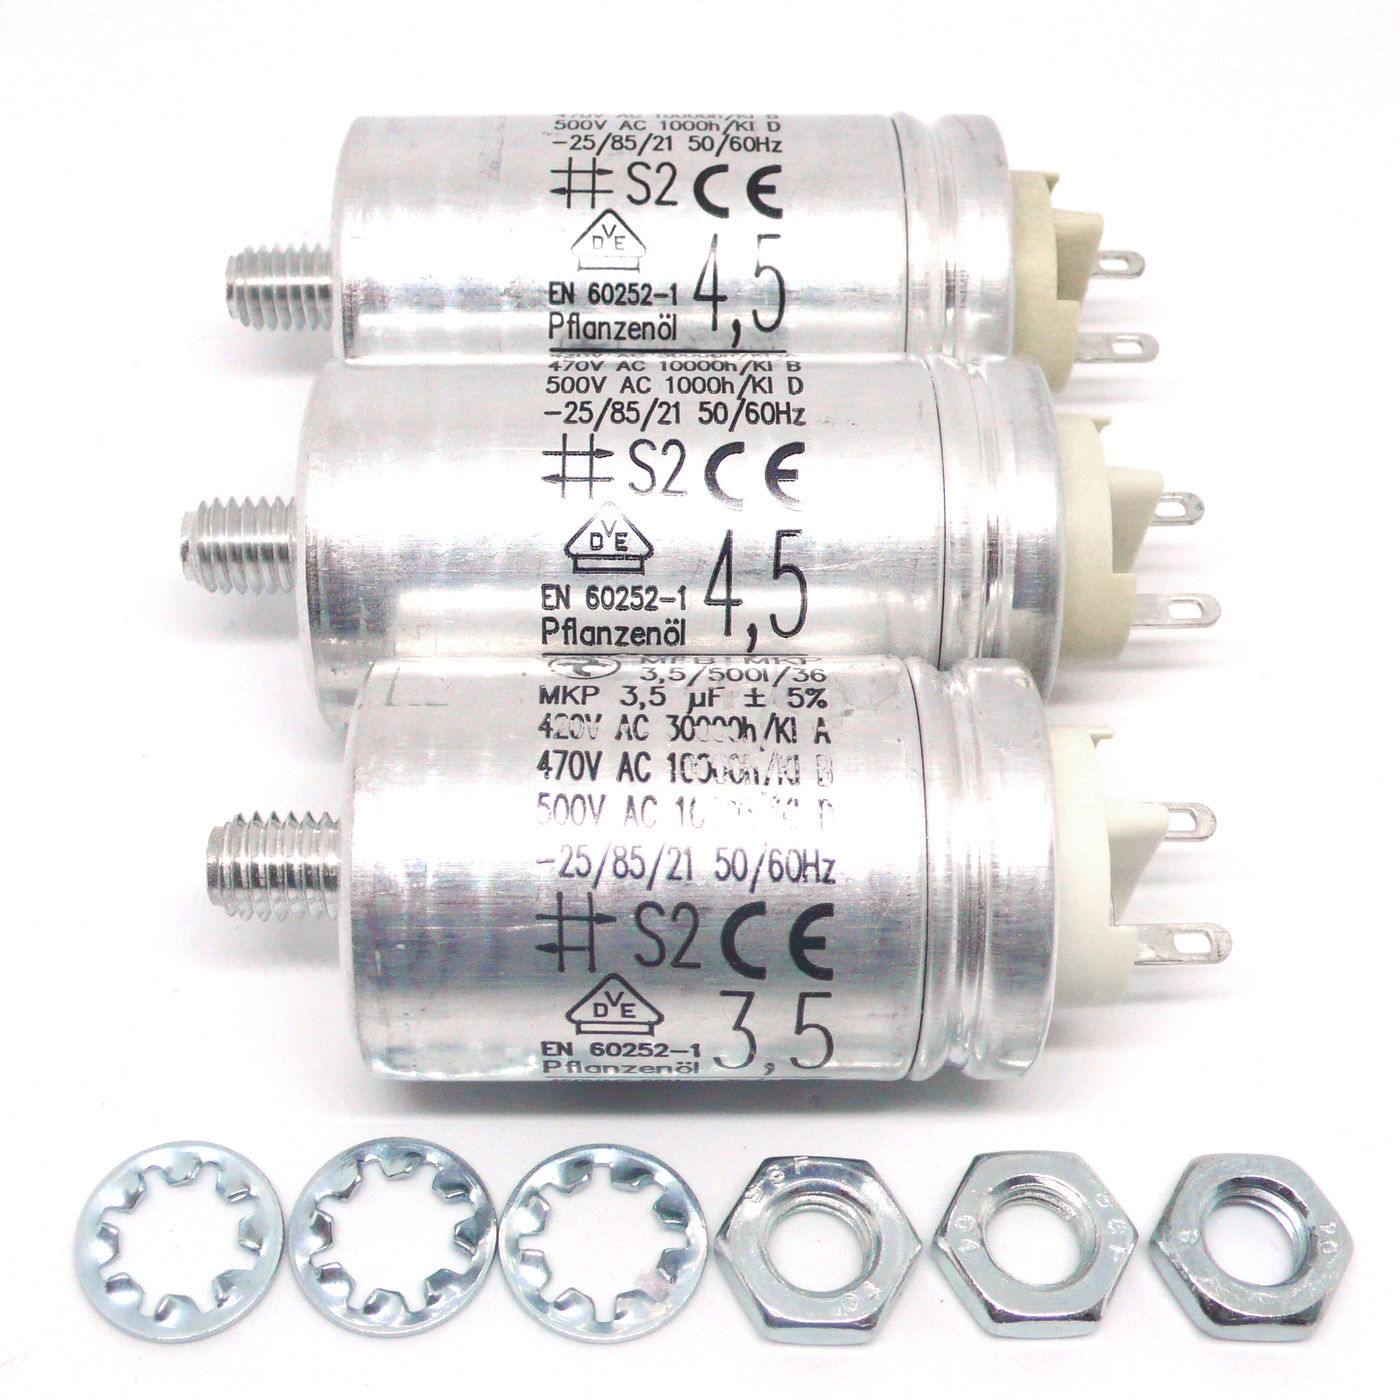 Hydra Premium Motorkondensatoren Set (1x 3,5μF und 2x 4,5μF) für Revox A77, B77 & PR99 (3er Set)